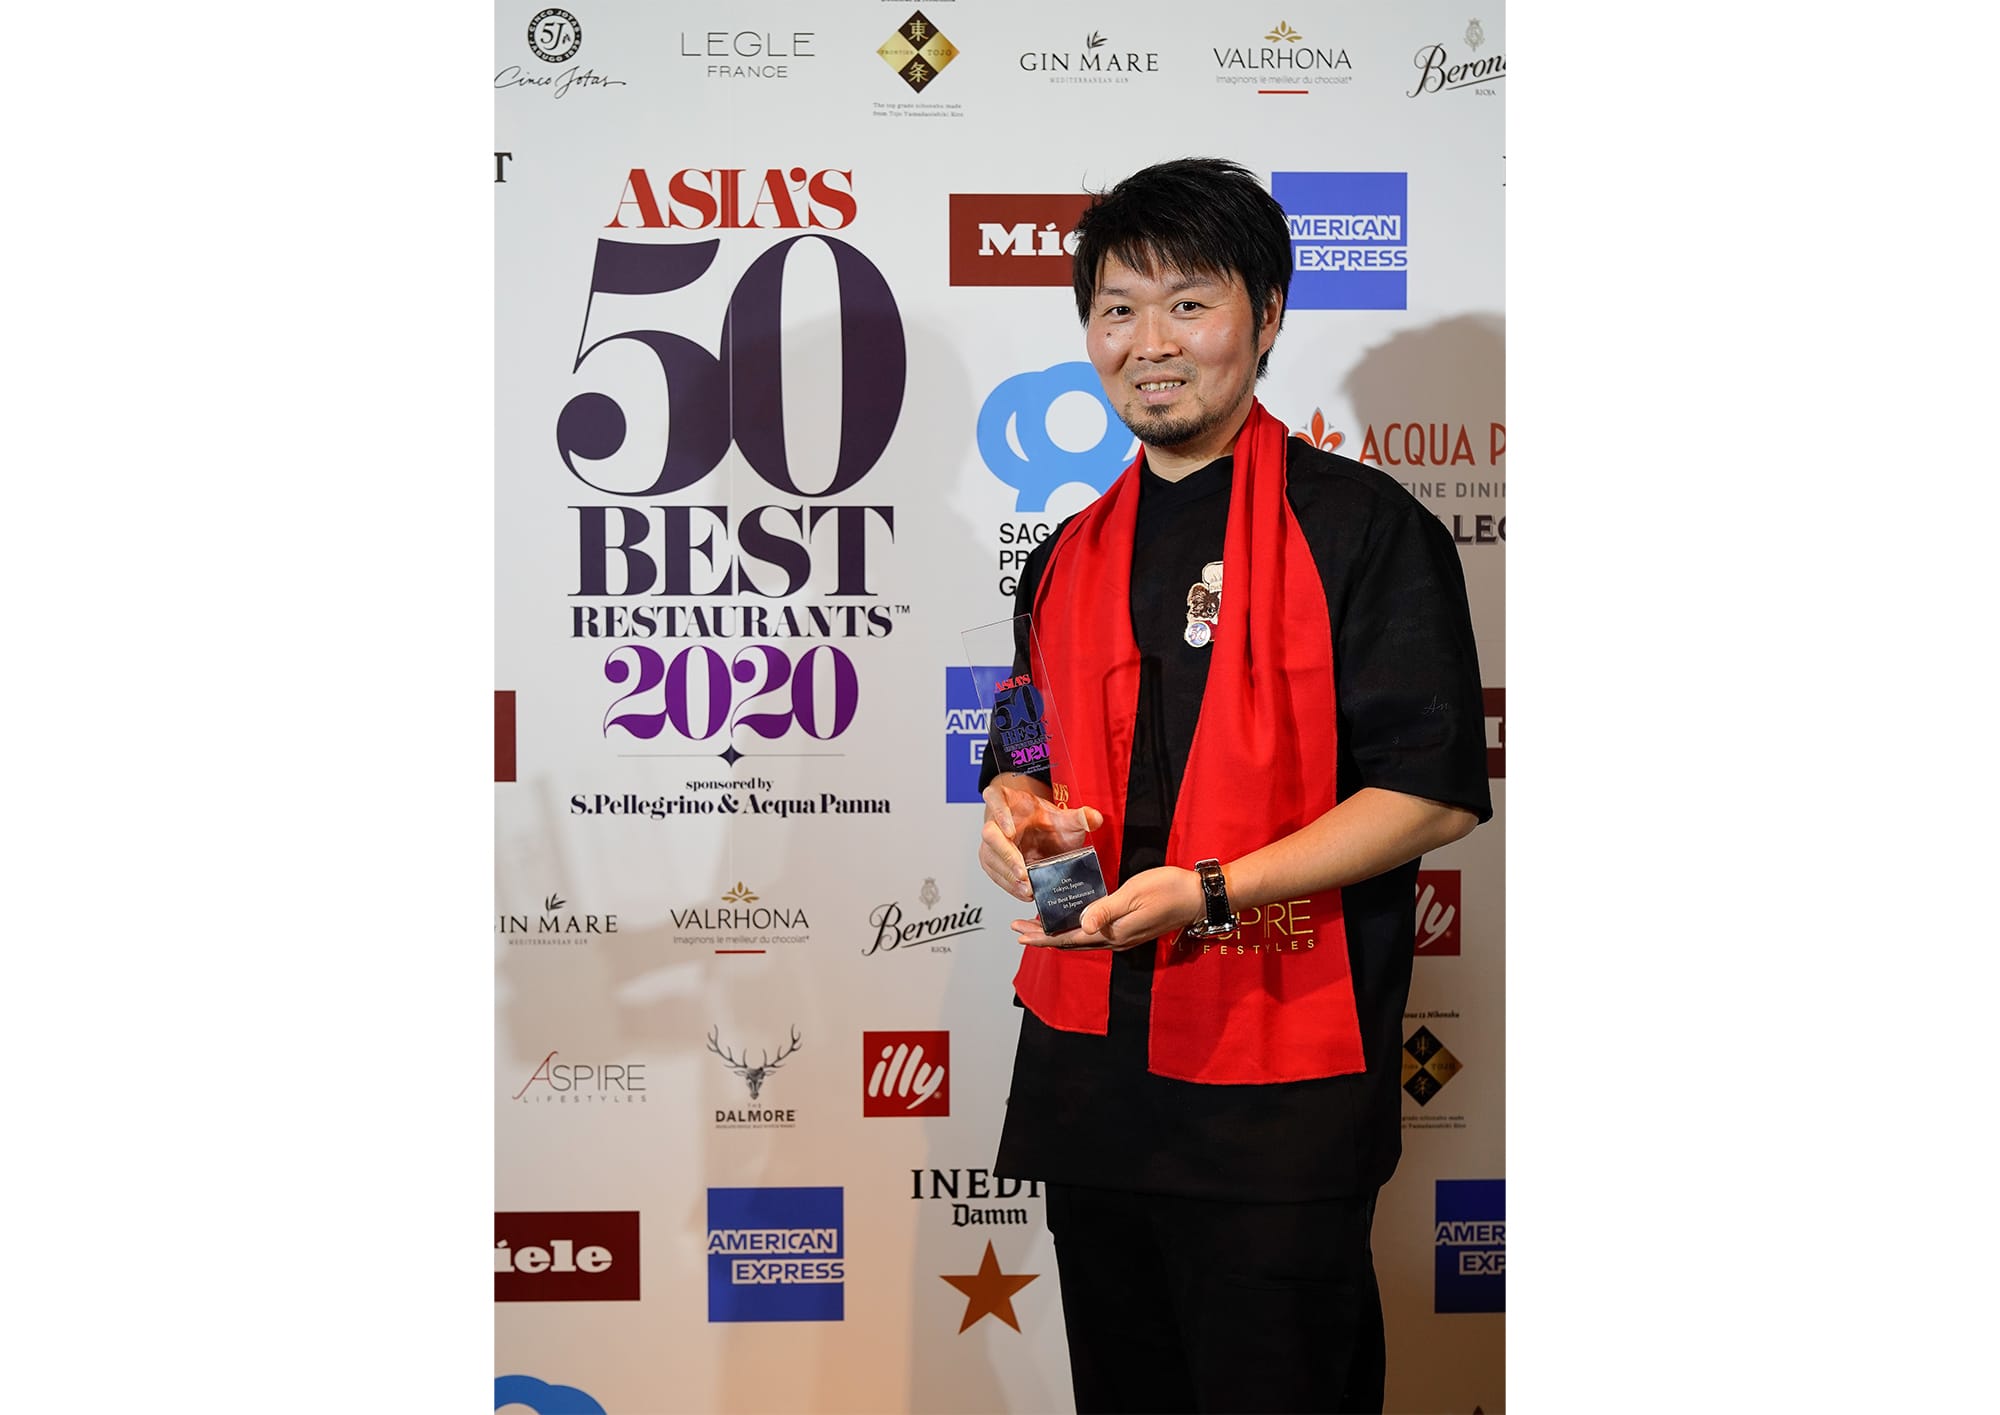 連續三年獲得「日本最佳餐廳」稱號的「傳Den」主廚長谷川在佑，在講臺上表達得獎的喜悅前先說出他的願望是全世界的廚師現在正面對的情況能儘快好轉。